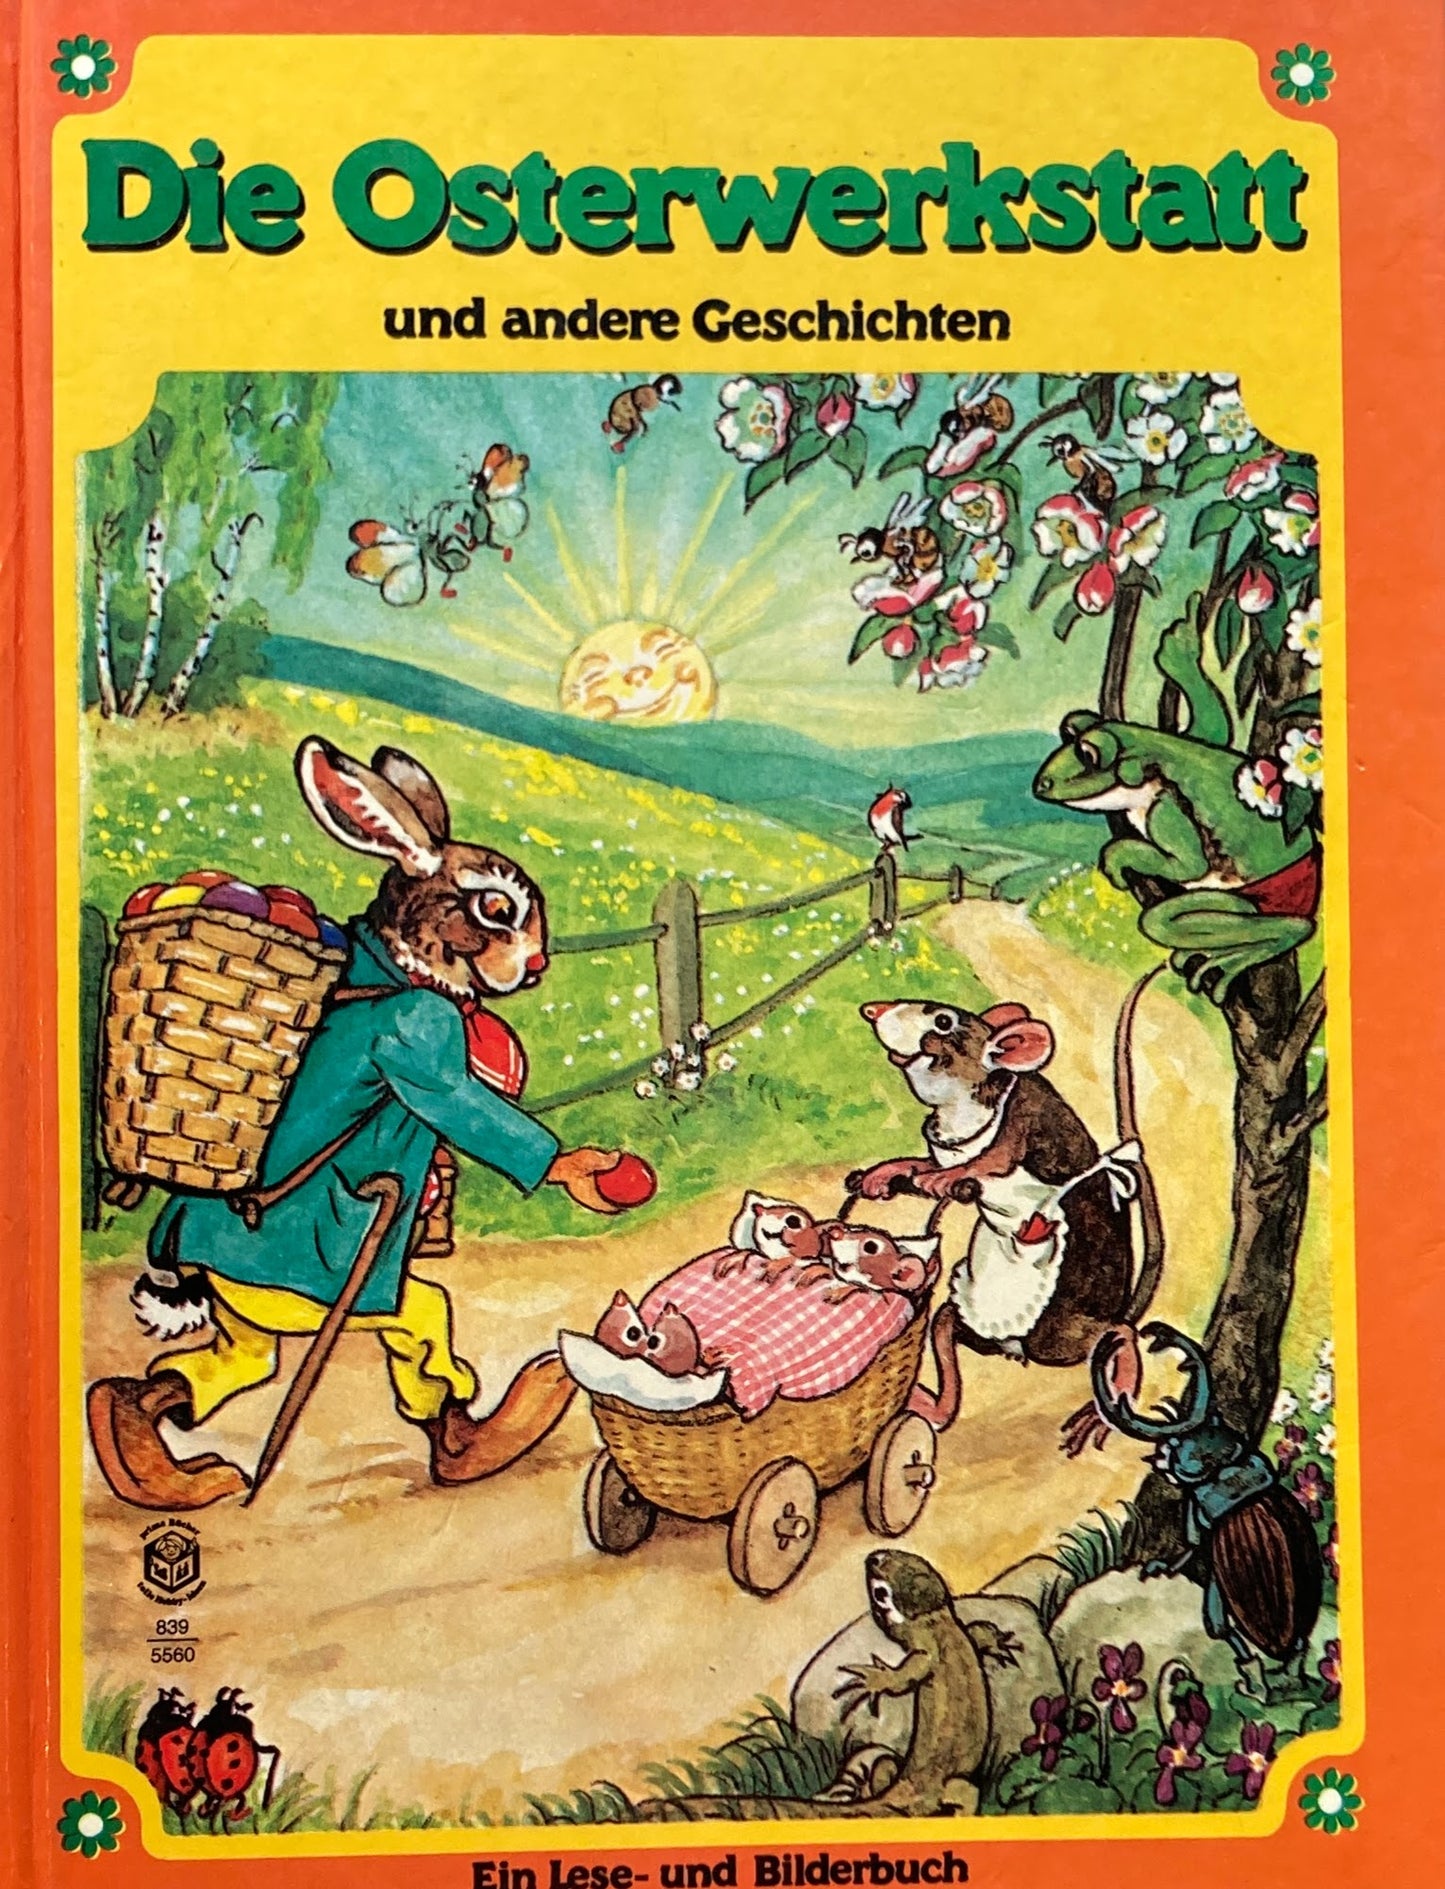 Die Osterwerkstatt und andere Geschichten　Richard Eder